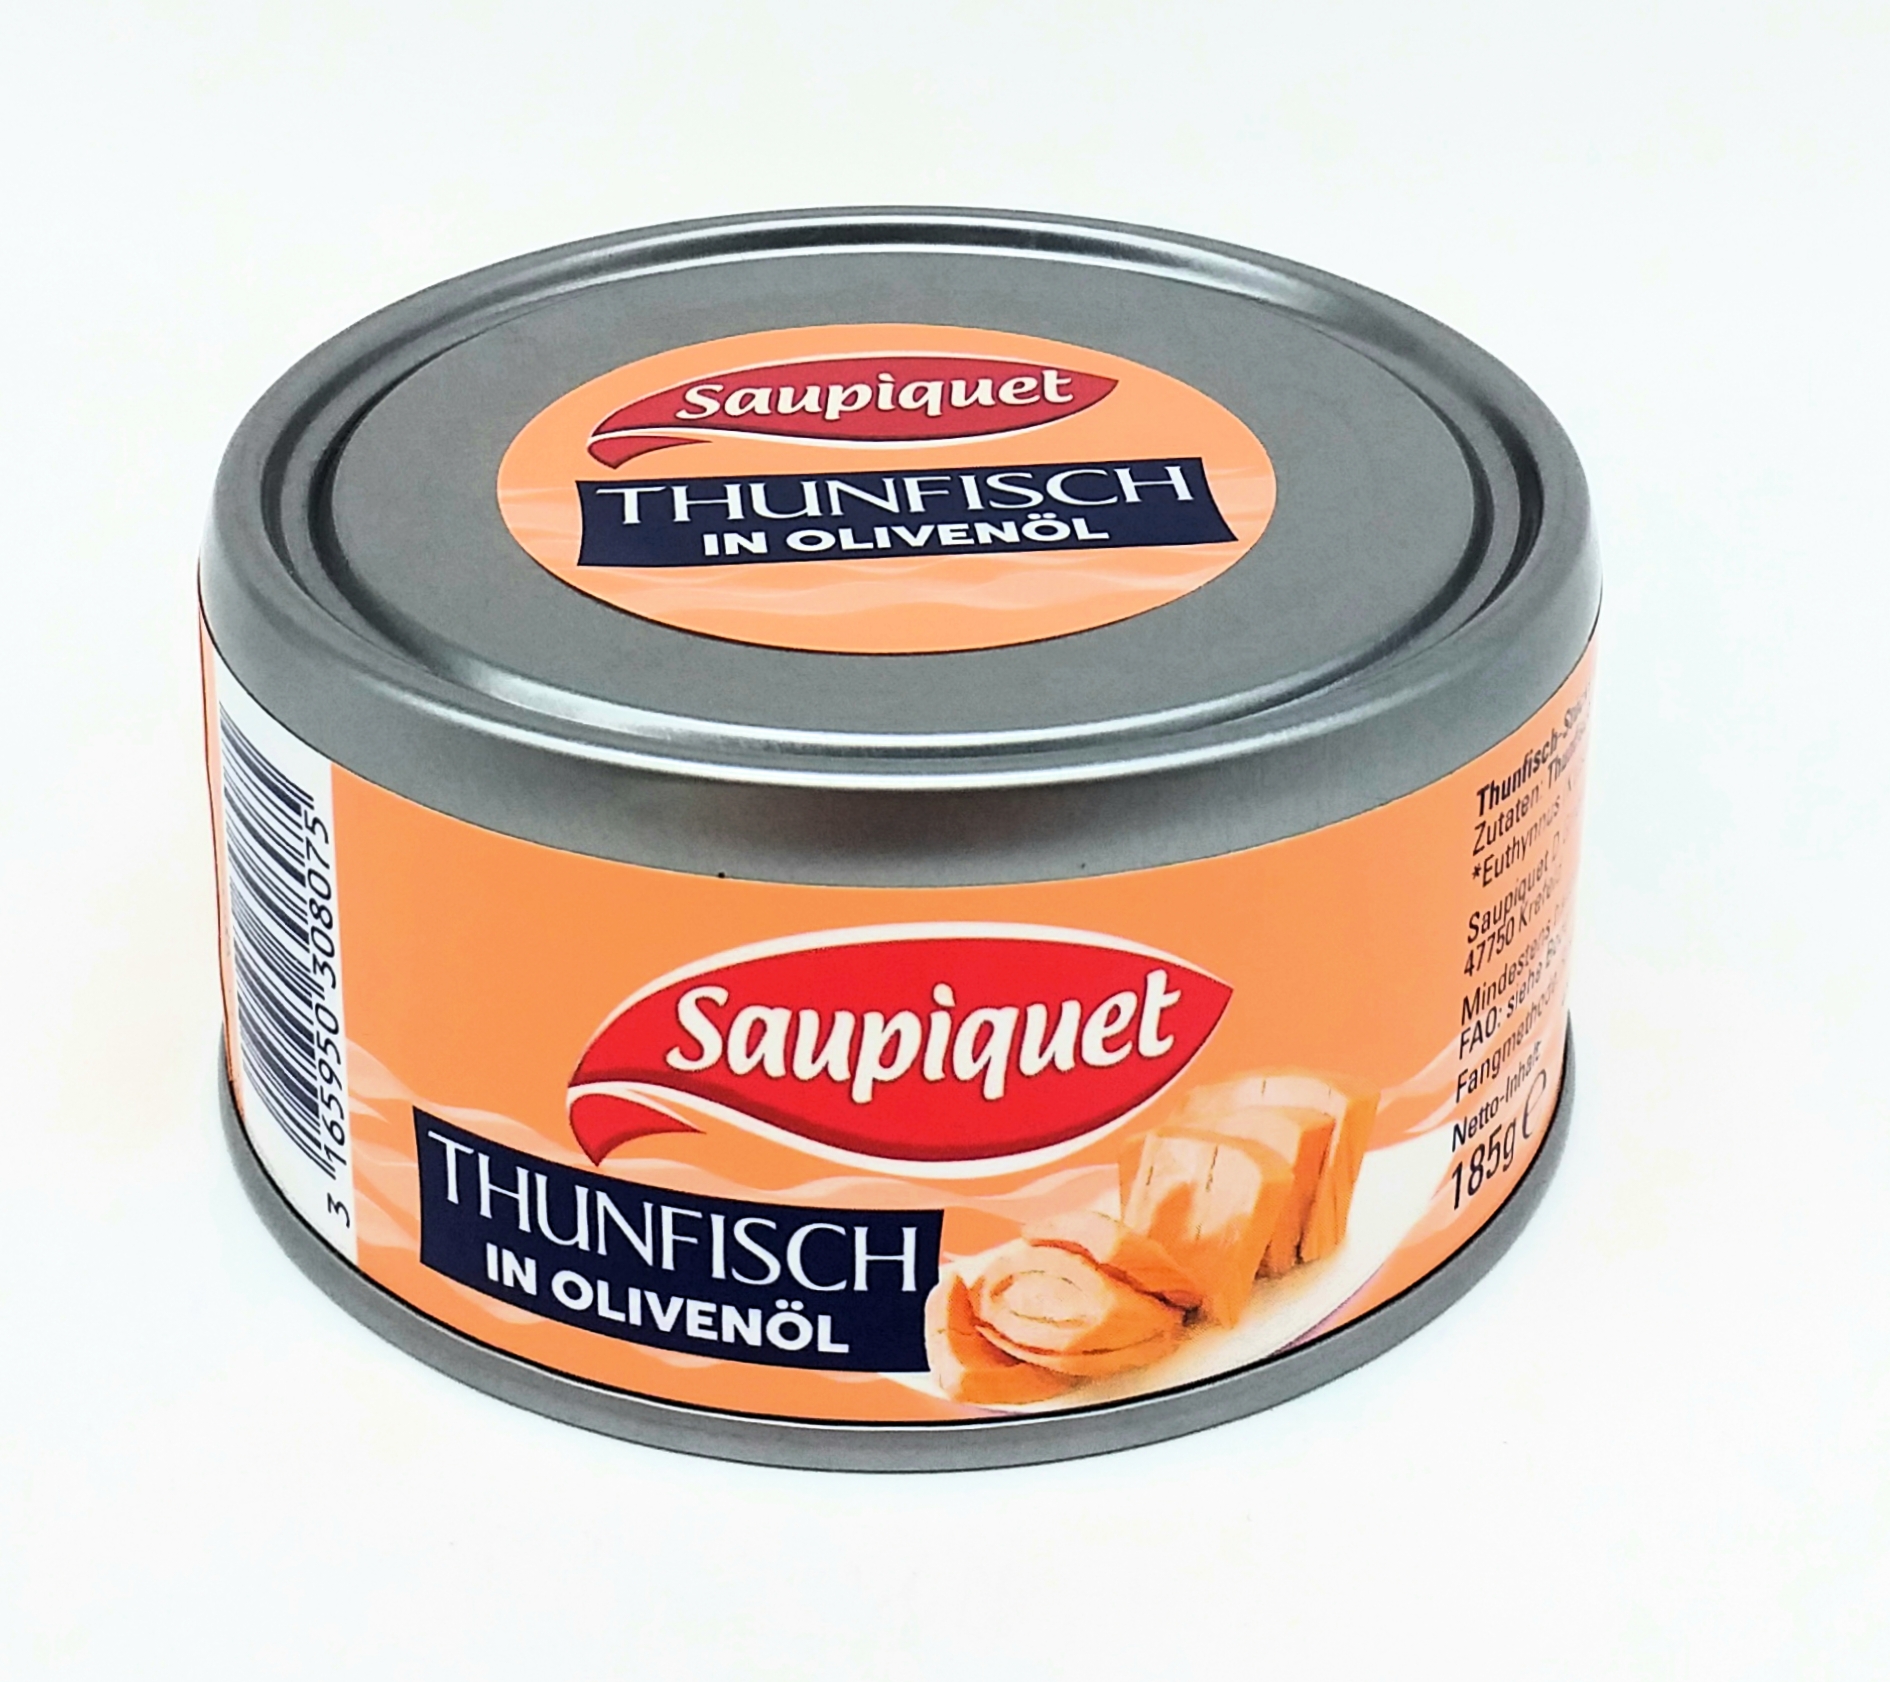 Saupiquet Thunfisch in Olivenöl 140g